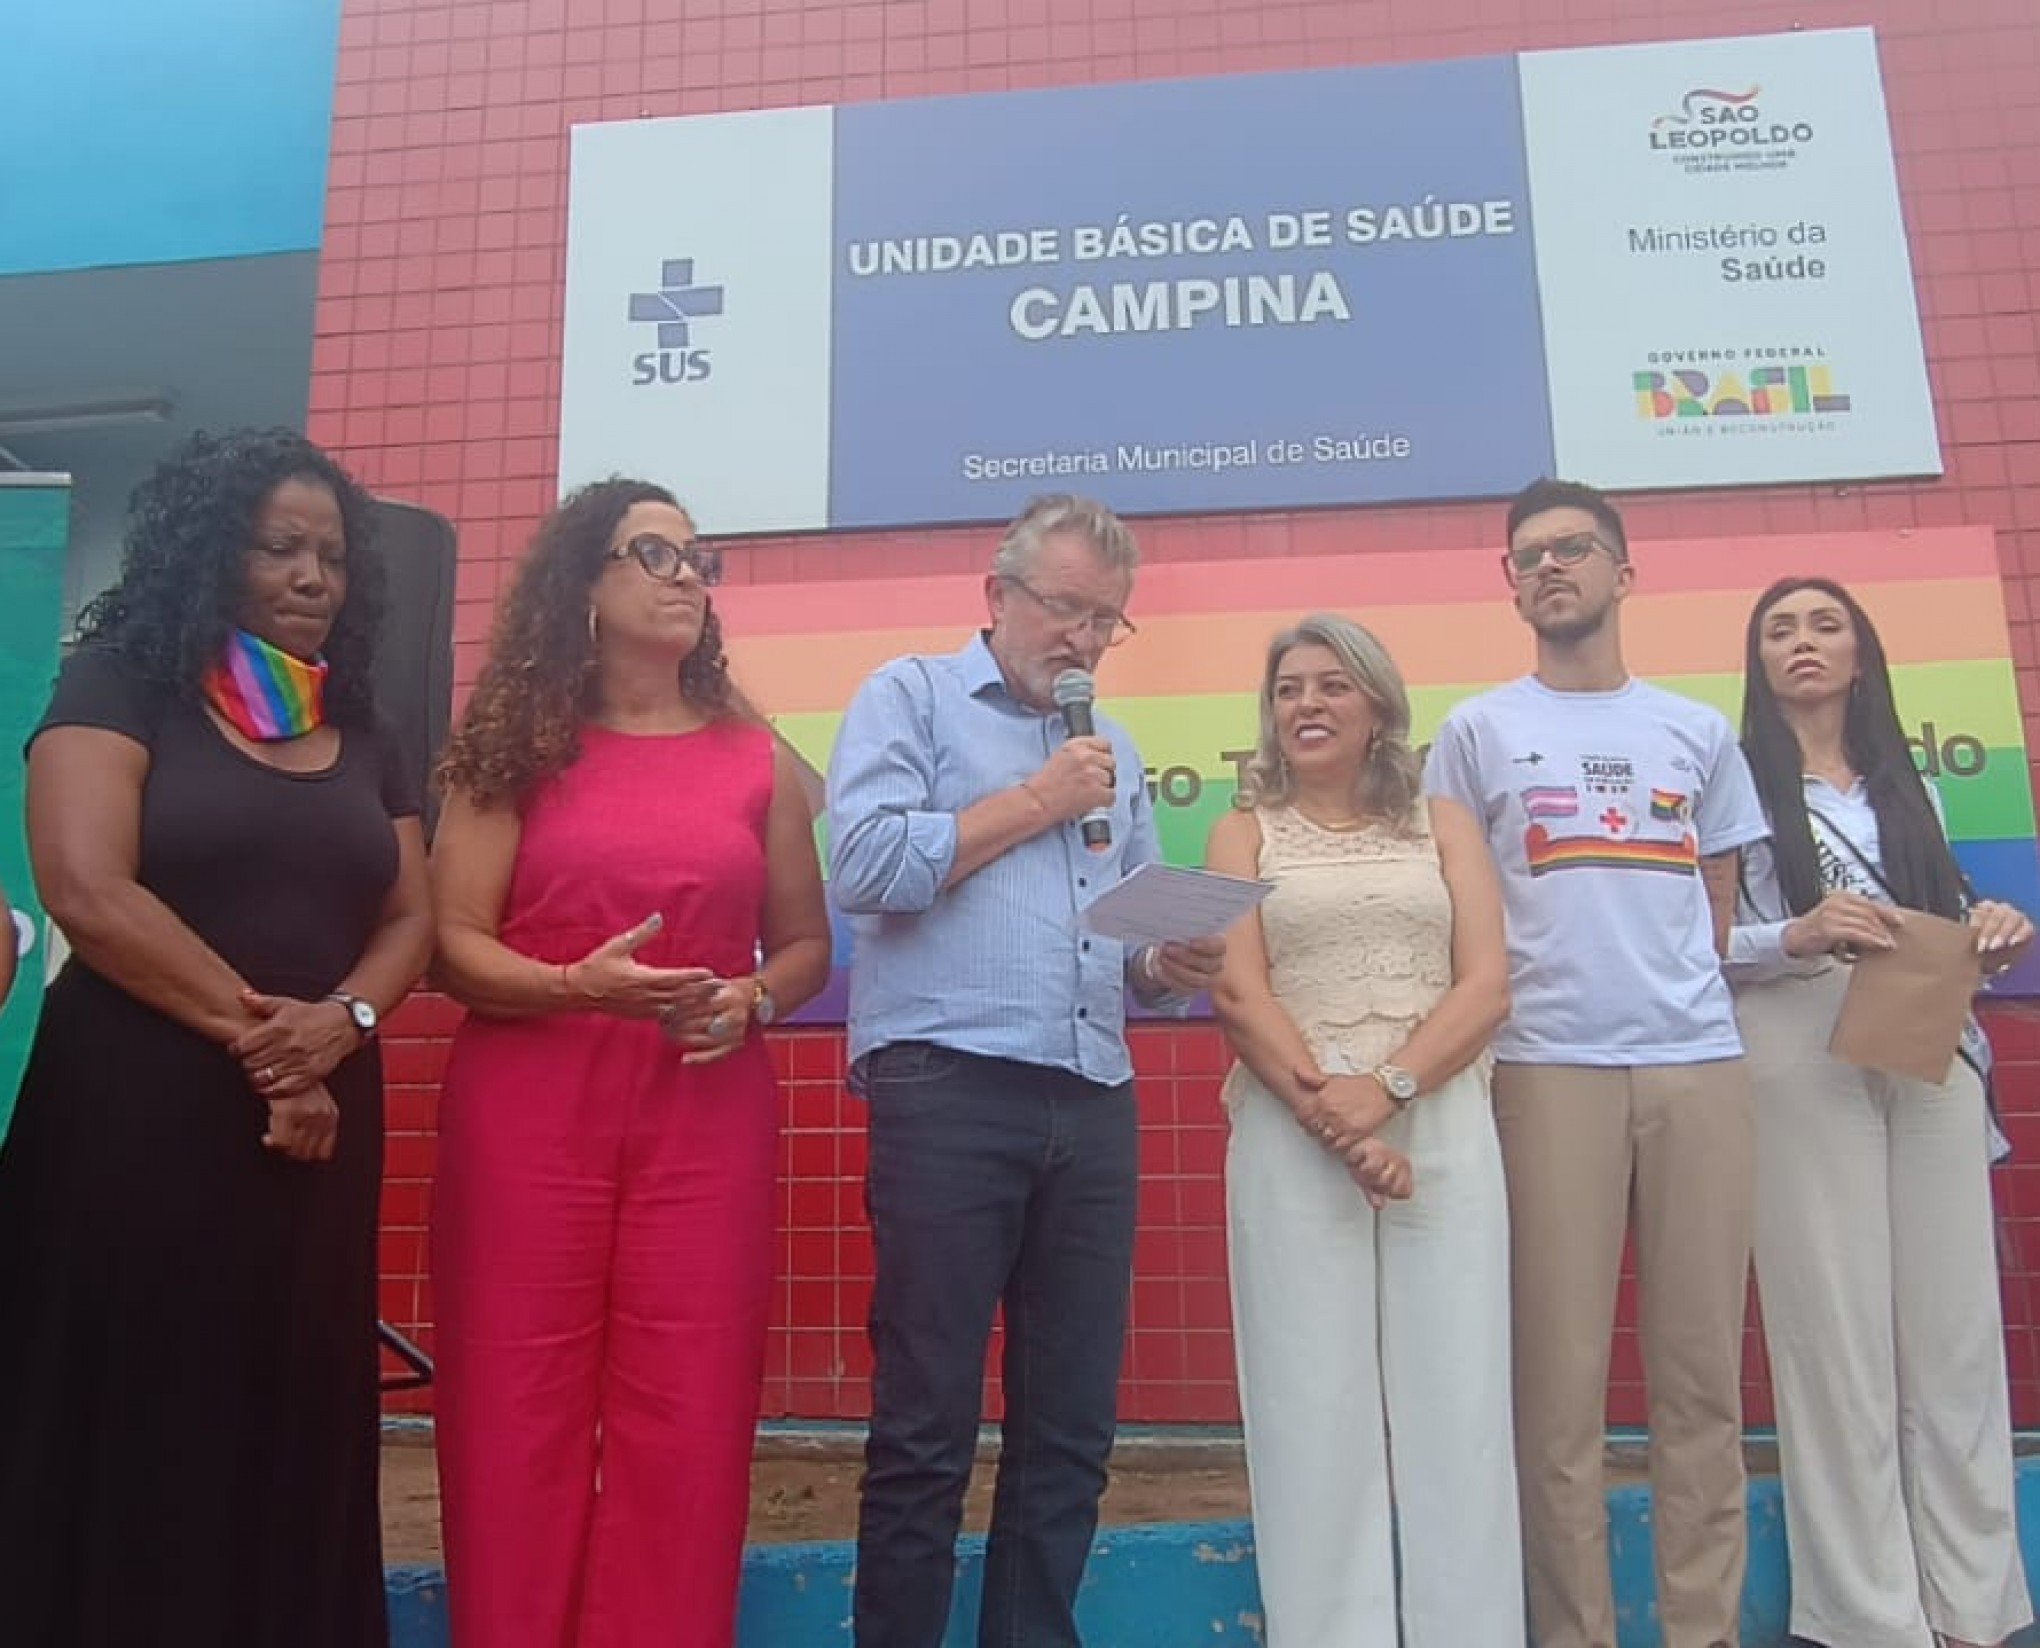 São Leopoldo inaugura ambulatório de Saúde LGBT+ na UBS Campina